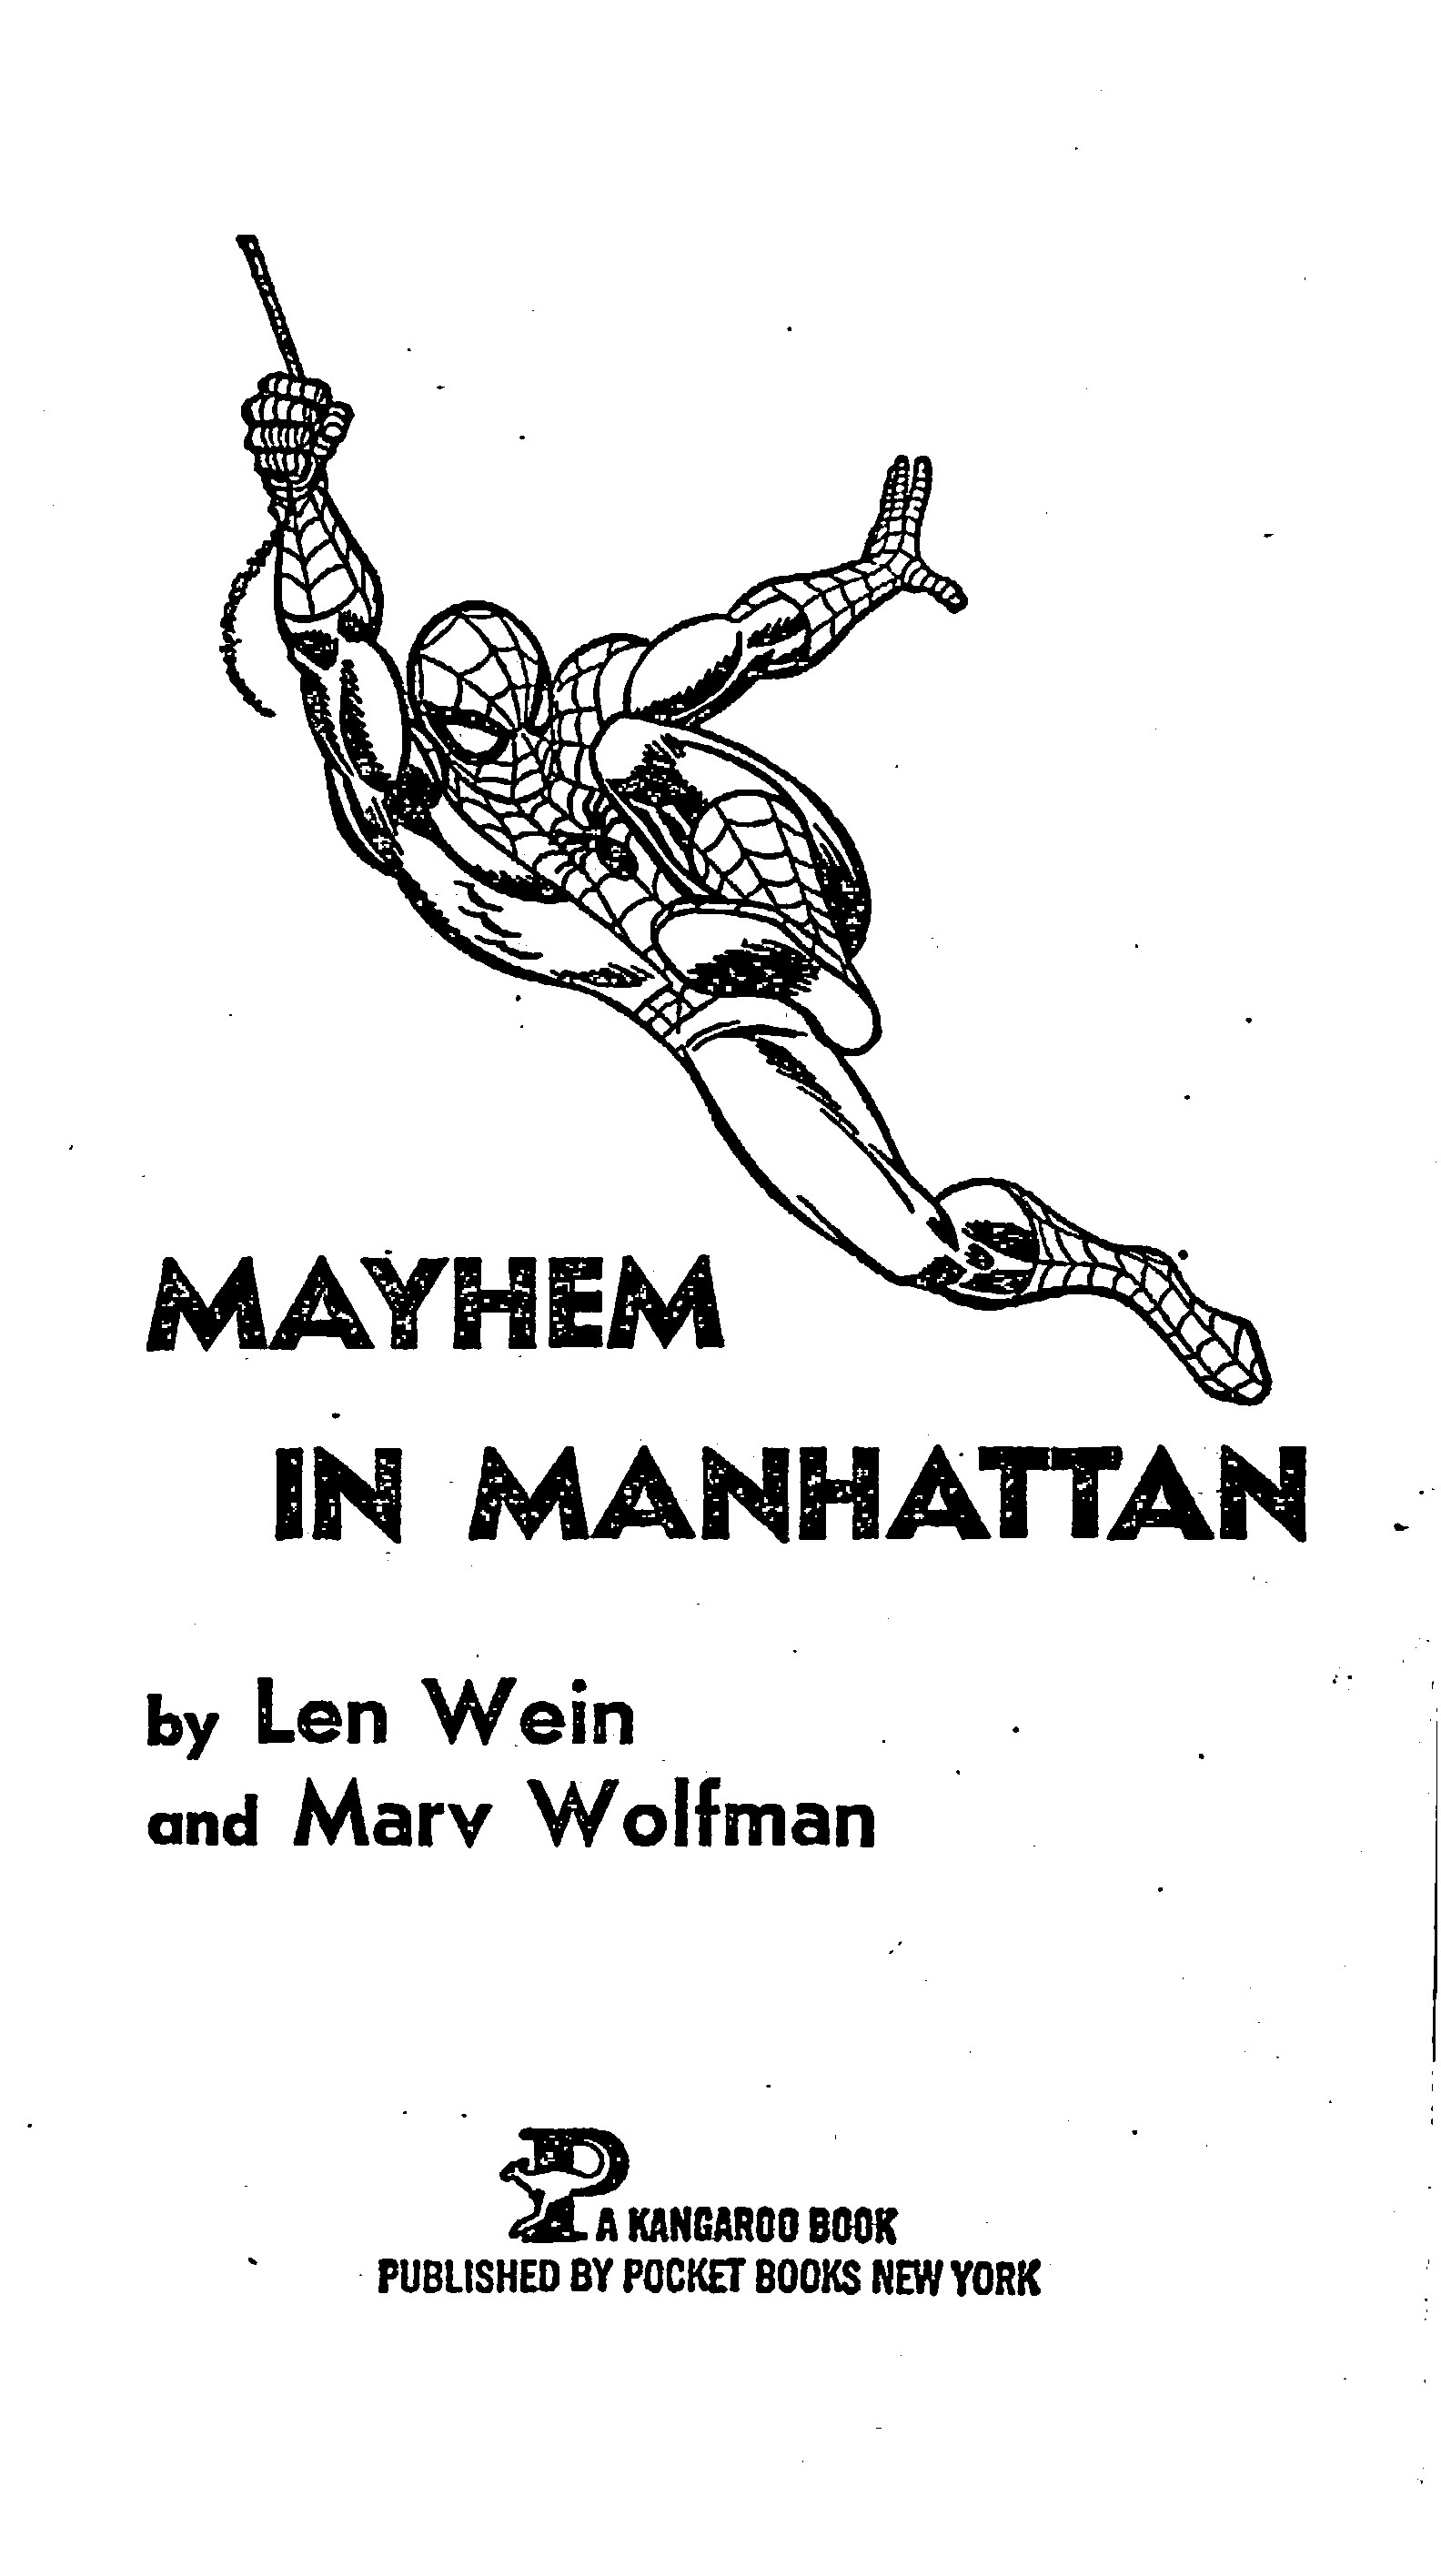 Read online The Amazing Spider-Man: Mayhem in Manhattan comic -  Issue # TPB (Part 1) - 4